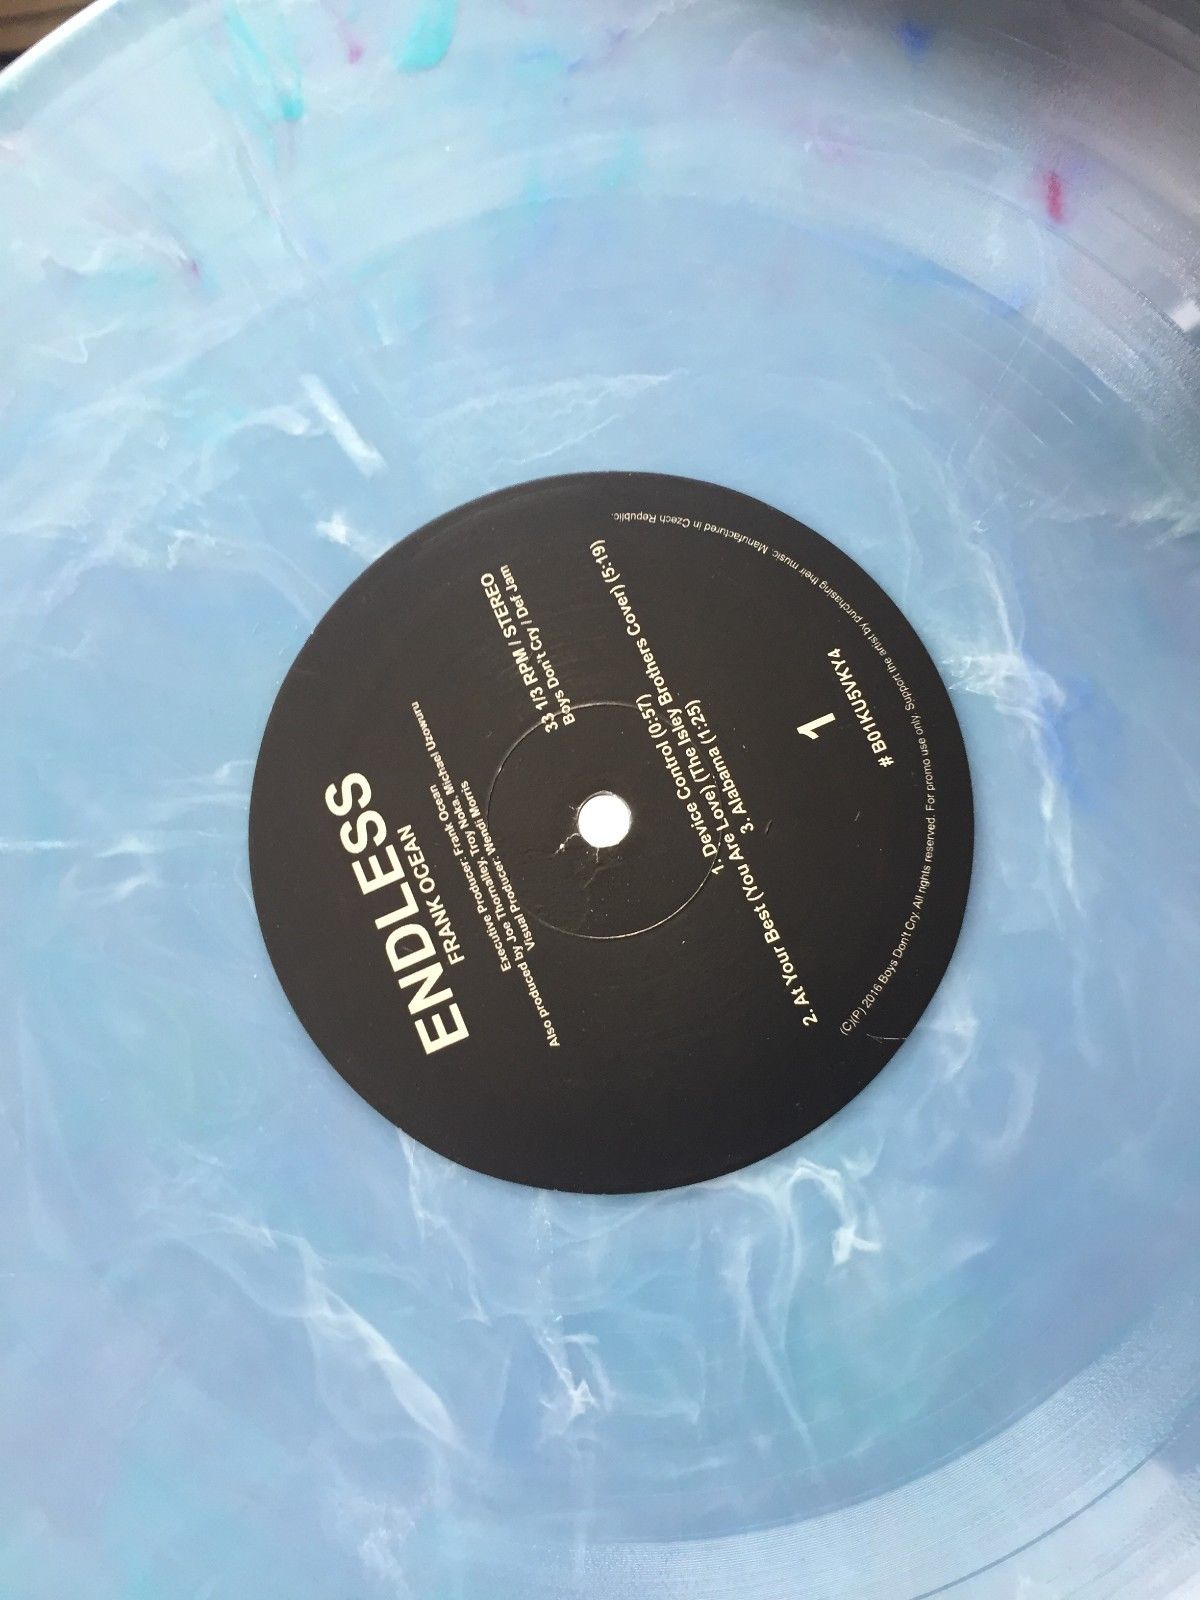 popsike.com - Frank Ocean - Endless - 2x LP Vinyl - auction details